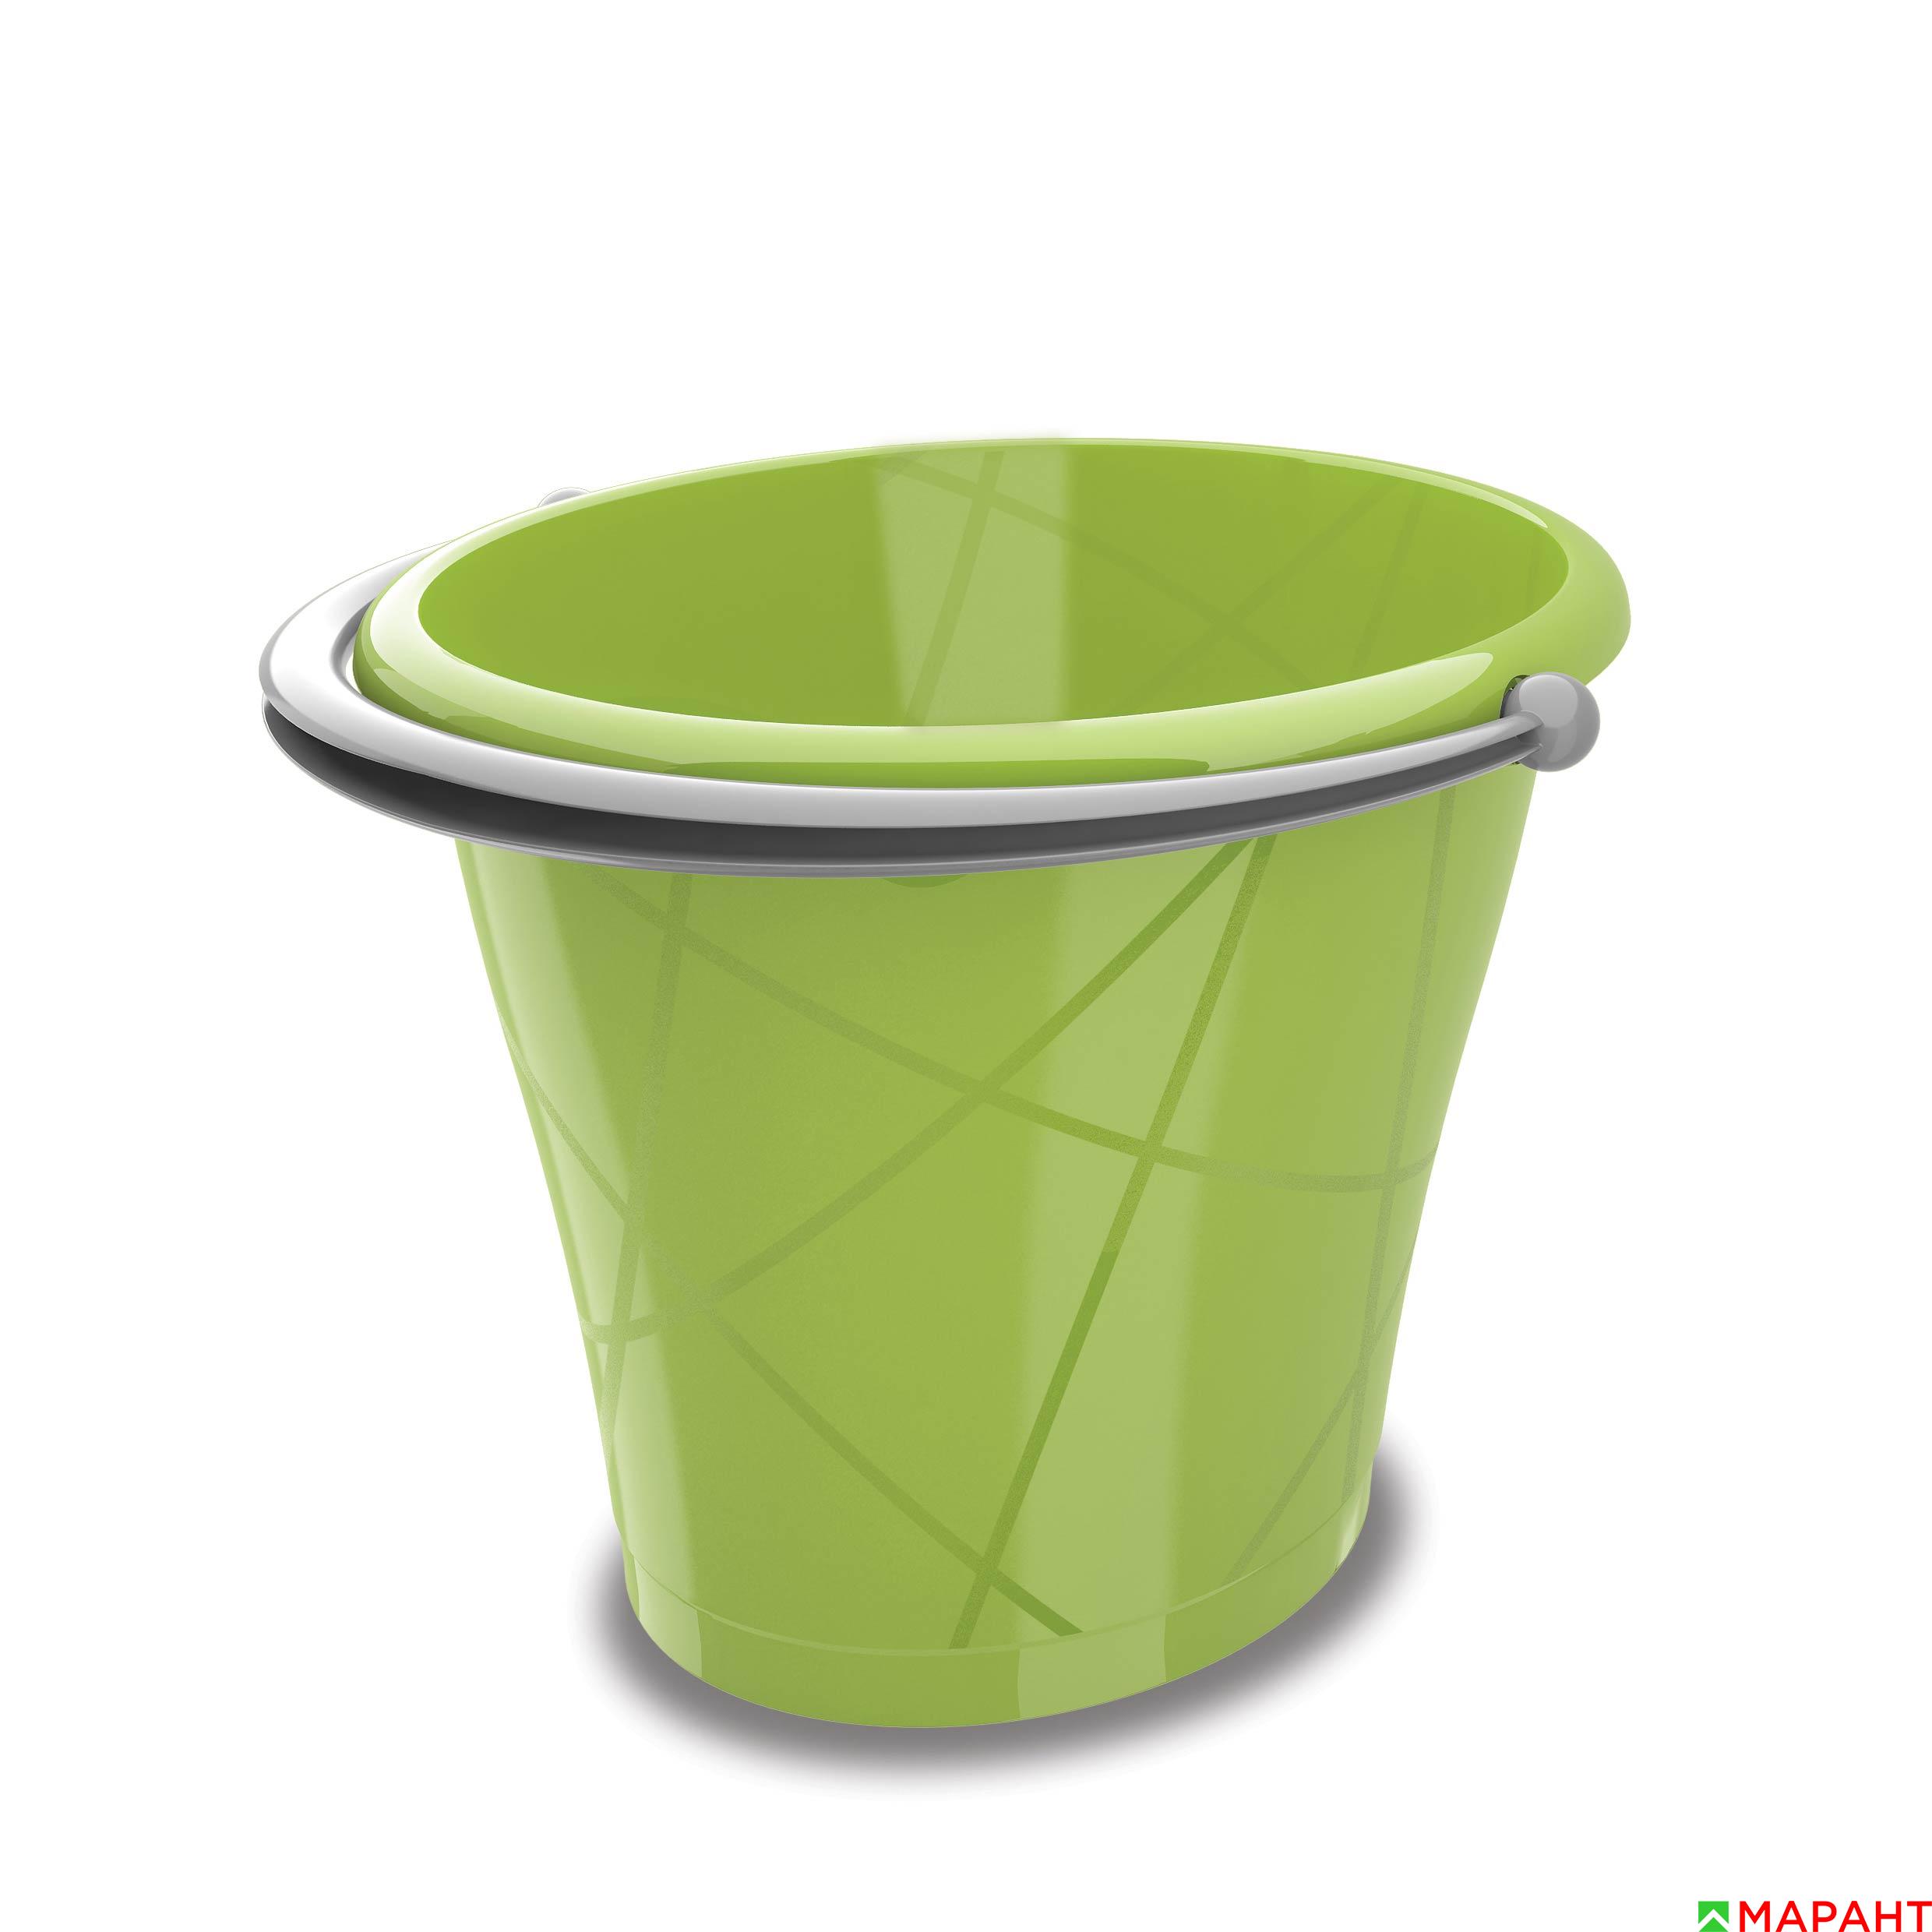 Ведро Kis Round bucket green